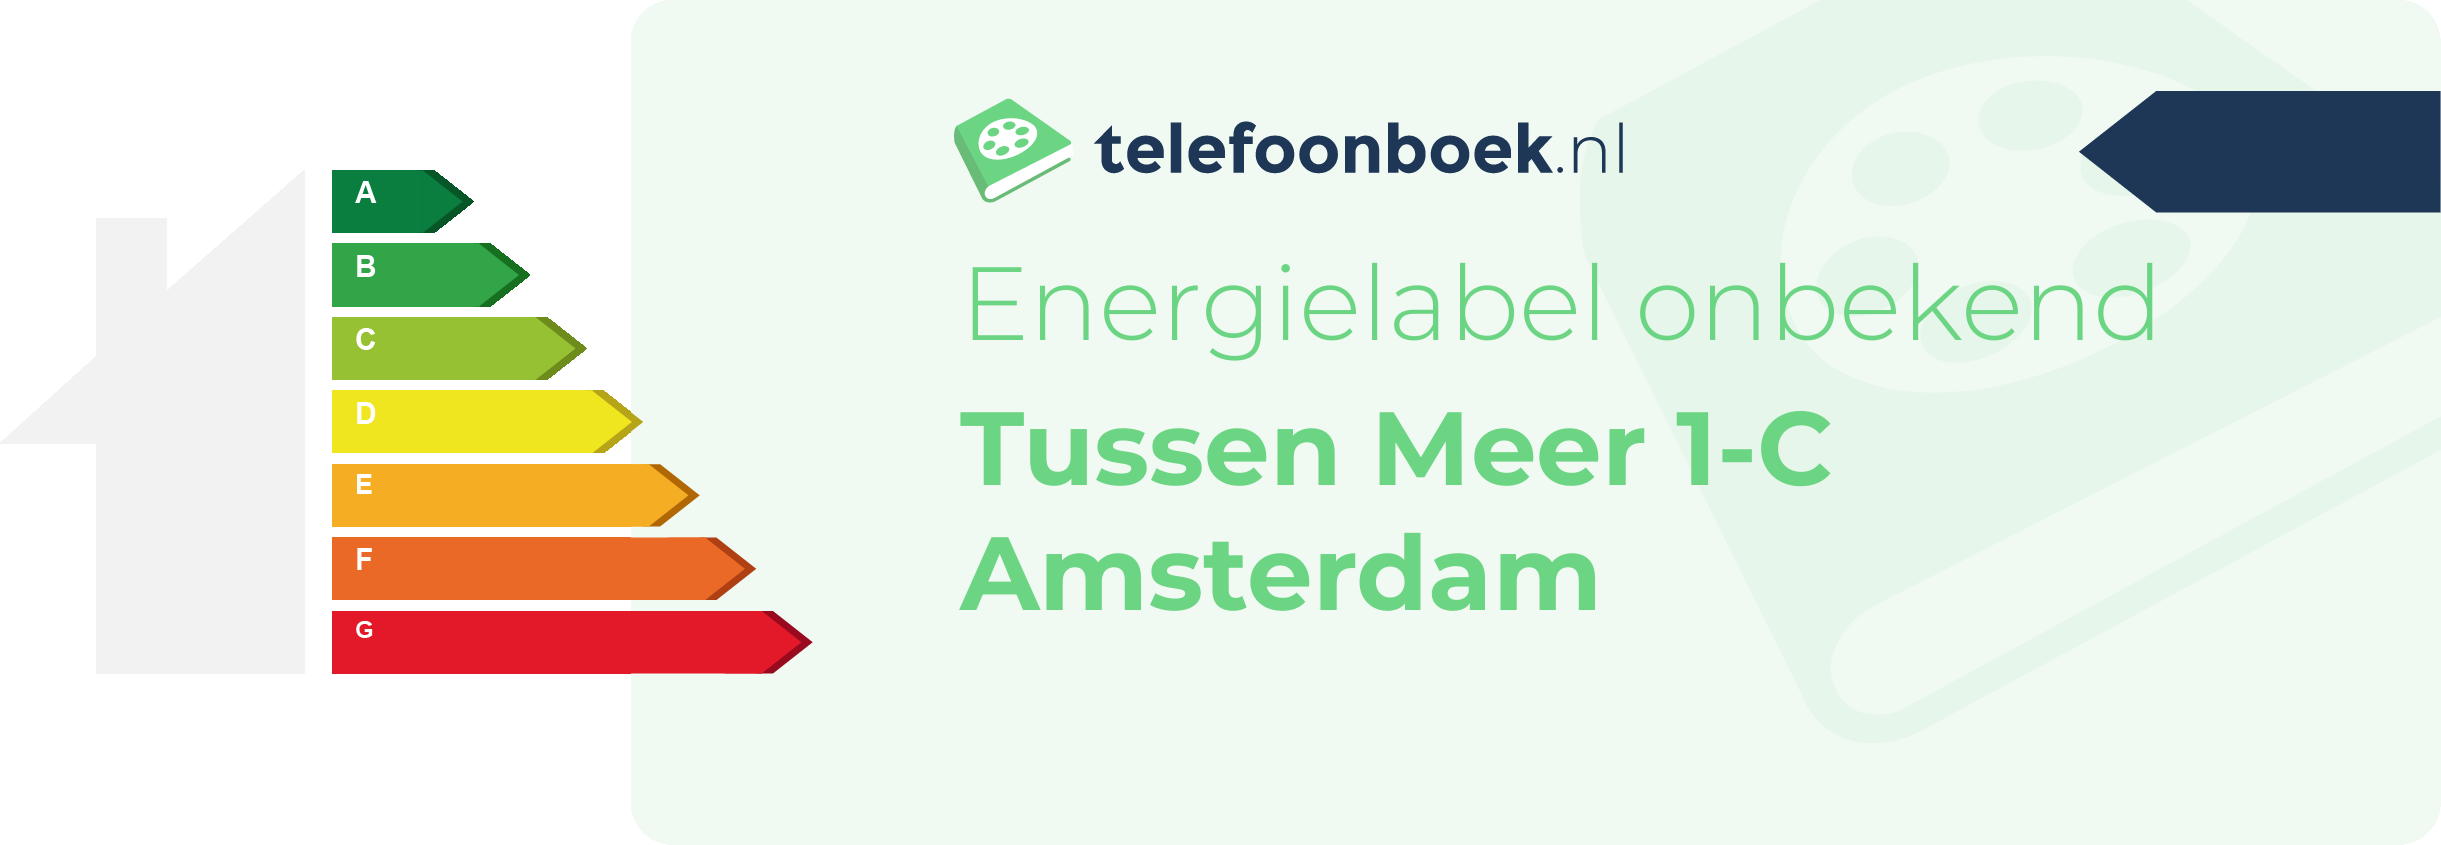 Energielabel Tussen Meer 1-C Amsterdam